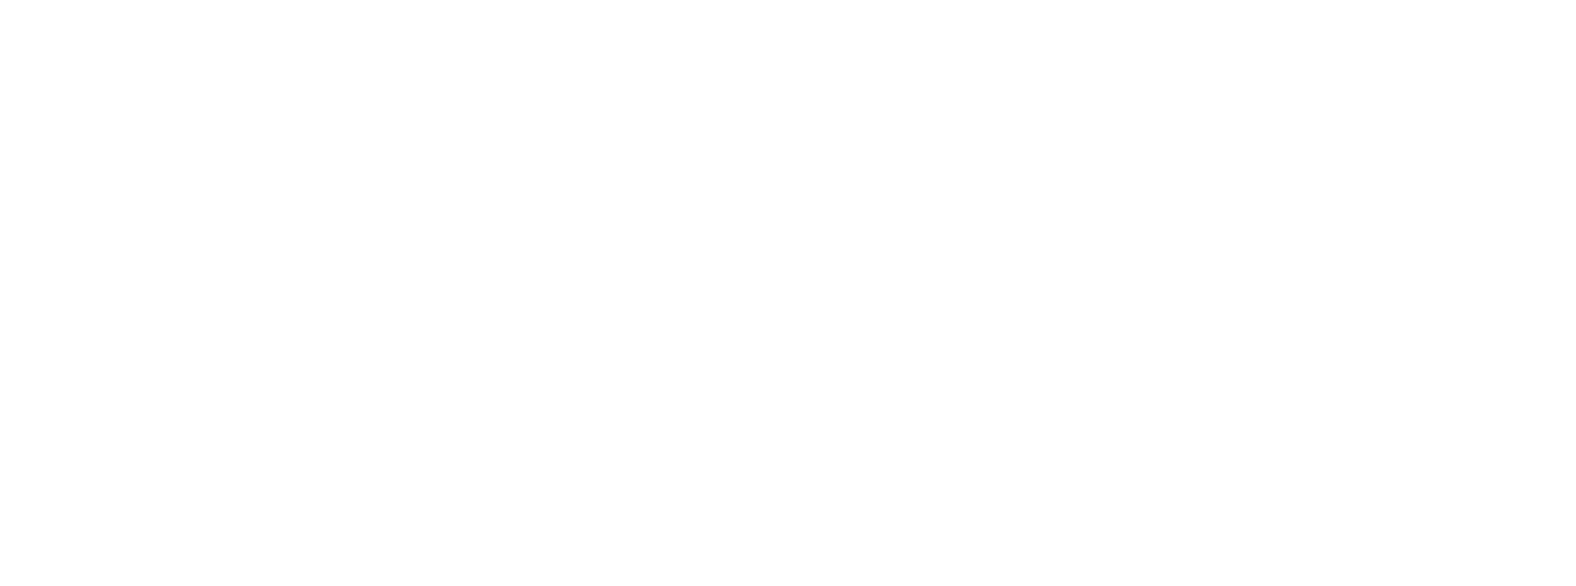 Socket Mobile logo large for dark backgrounds (transparent PNG)